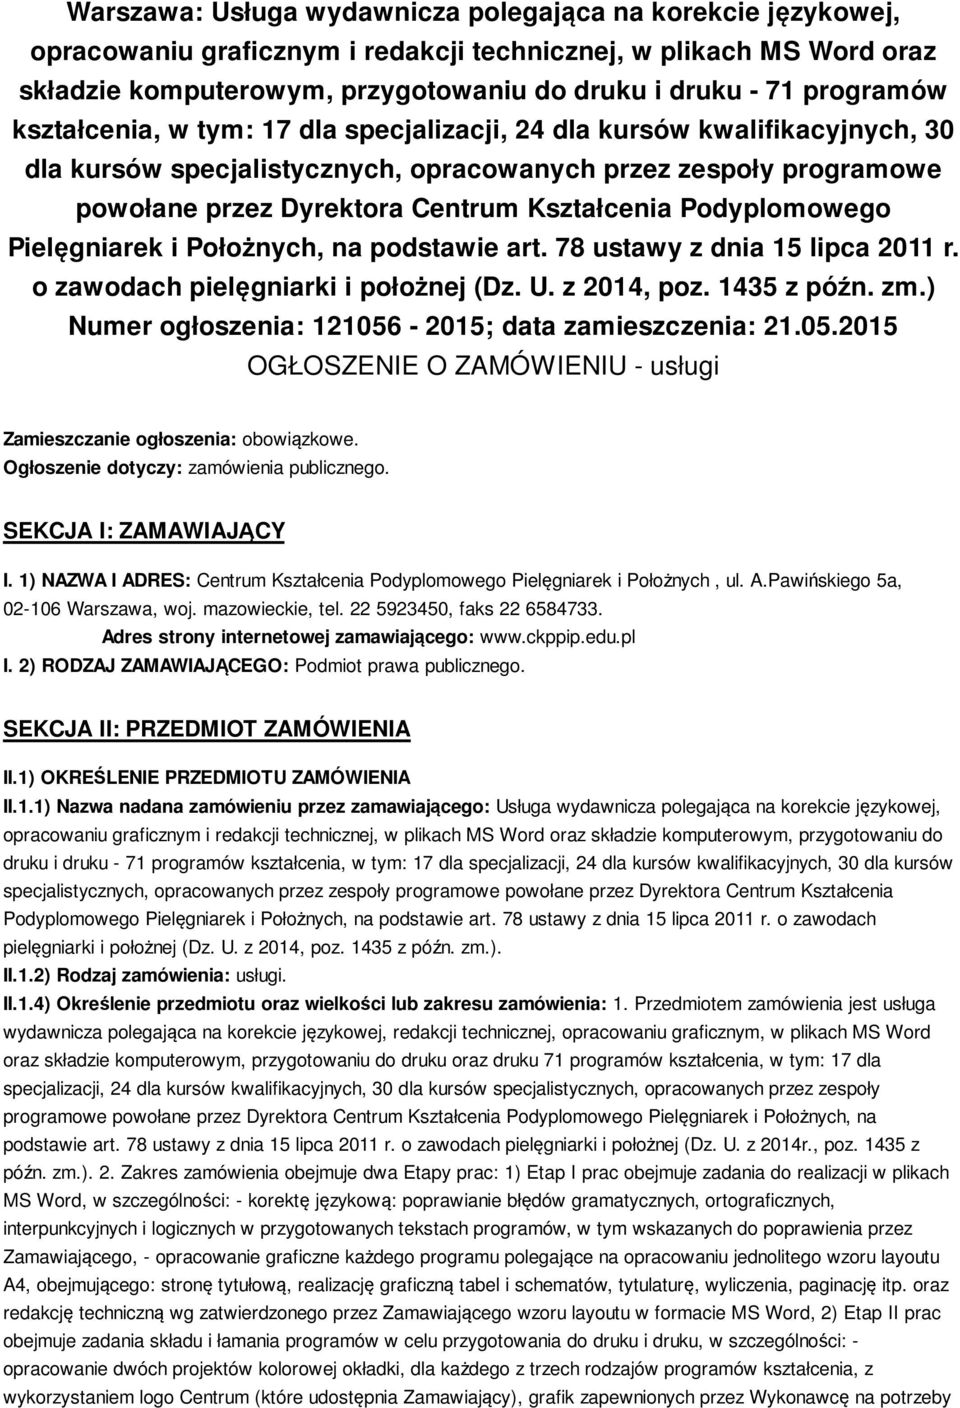 Podyplomowego Pielęgniarek i Położnych, na podstawie art. 78 ustawy z dnia 15 lipca 2011 r. o zawodach pielęgniarki i położnej (Dz. U. z 2014, poz. 1435 z późn. zm.